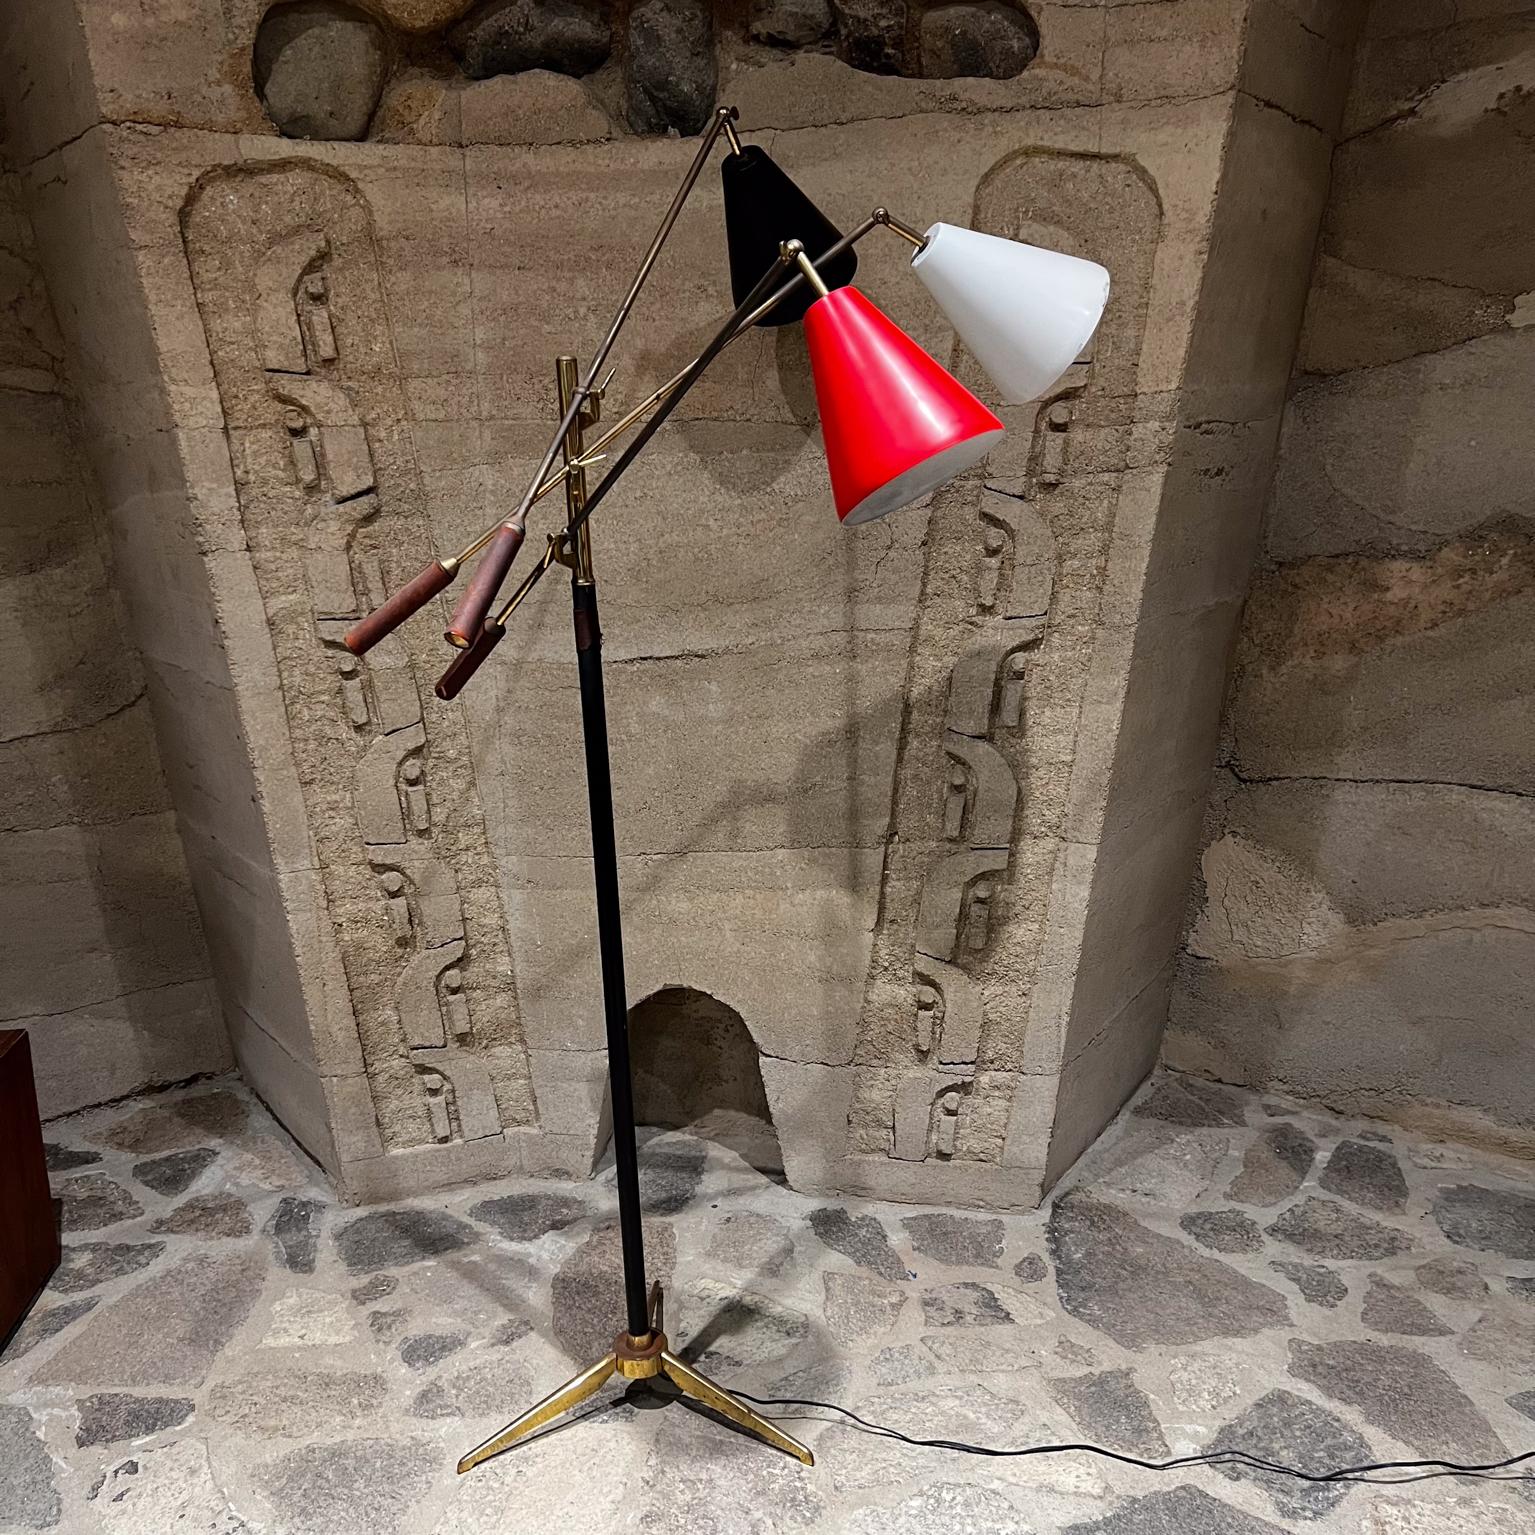 1958 Stil Arredoluce frühe Triennale Lampe Italien
Messing mit original braunem Leder.
Der Farbton ist schwarz, rot und weiß.
Auf der Oberseite gestempelt, hergestellt in Italien.
68,5 H x 32,5 B x 36 T
Erwarten Sie unrestaurierten originalen